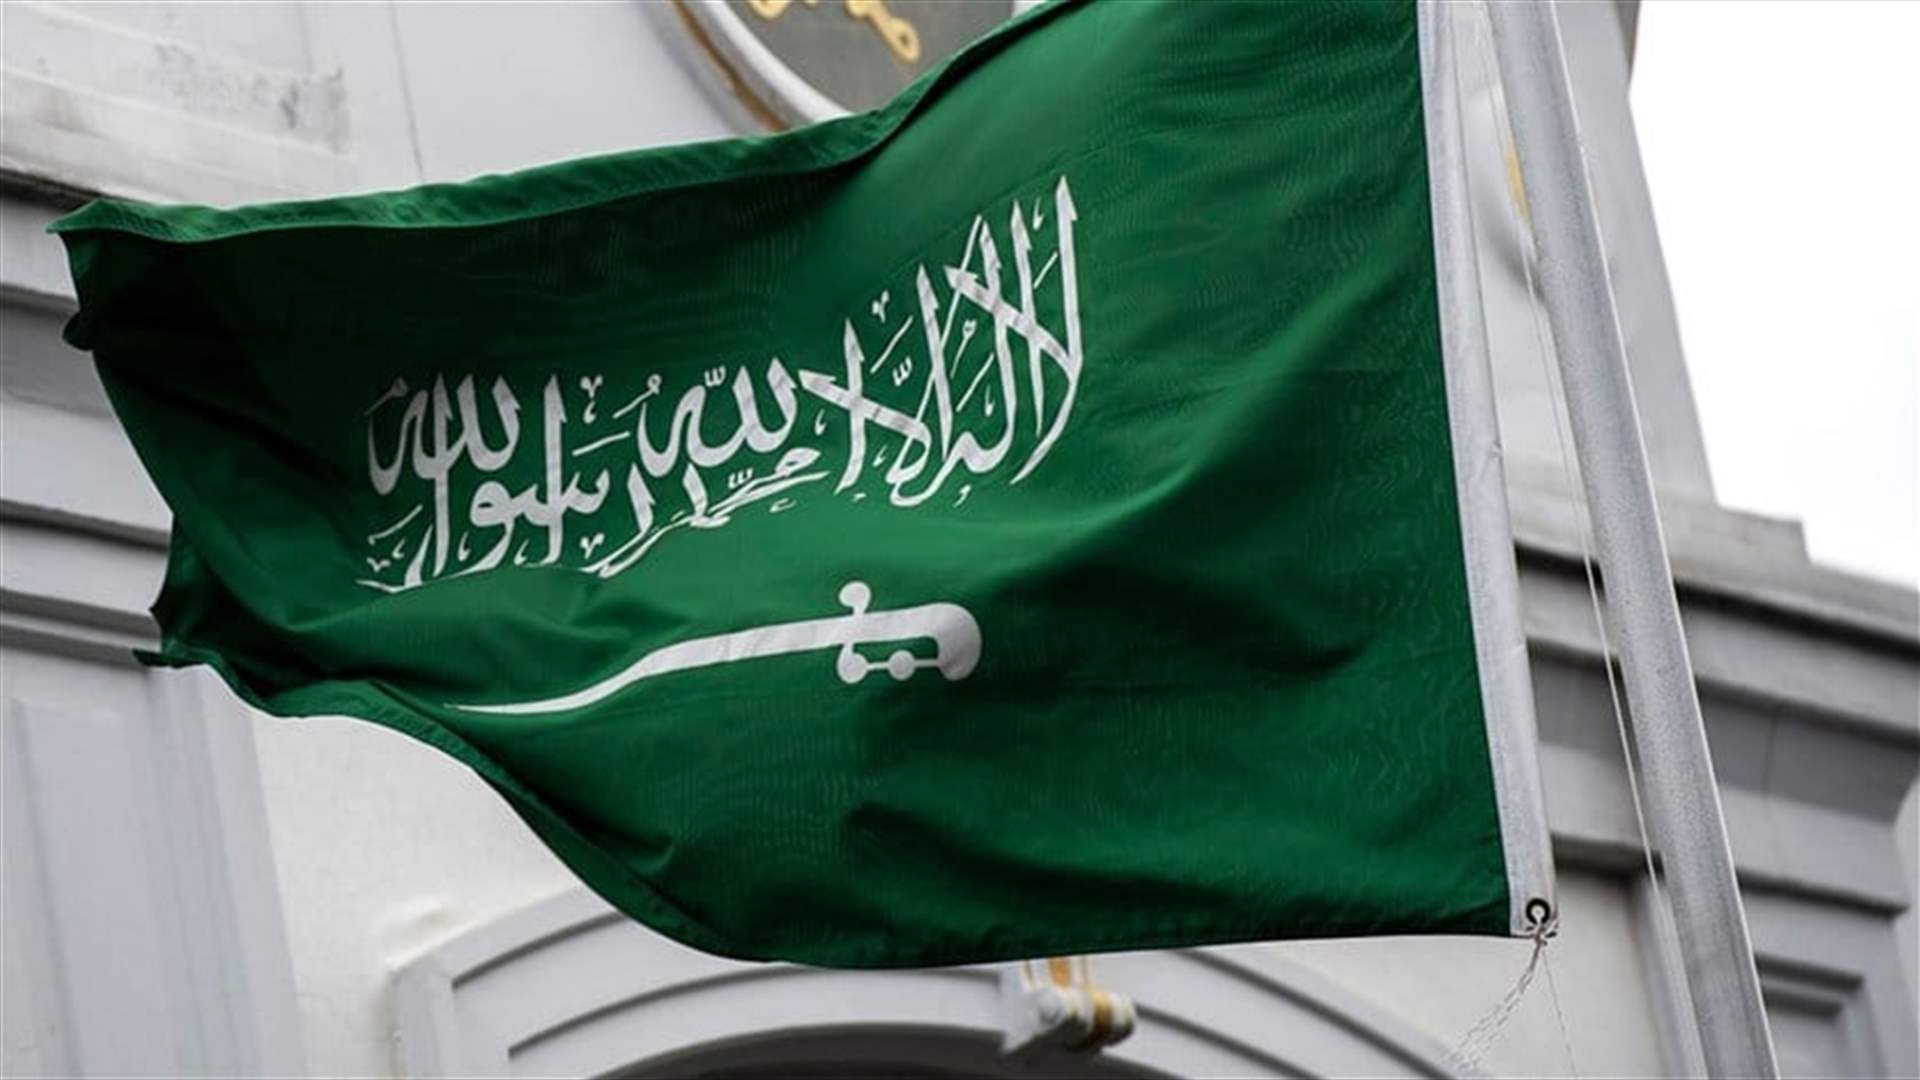 أبو فاعور نقل إلى جنبلاط معلومات جازمة عن استحالة دعم السعودية لانتخاب فرنجية (نداء الوطن)